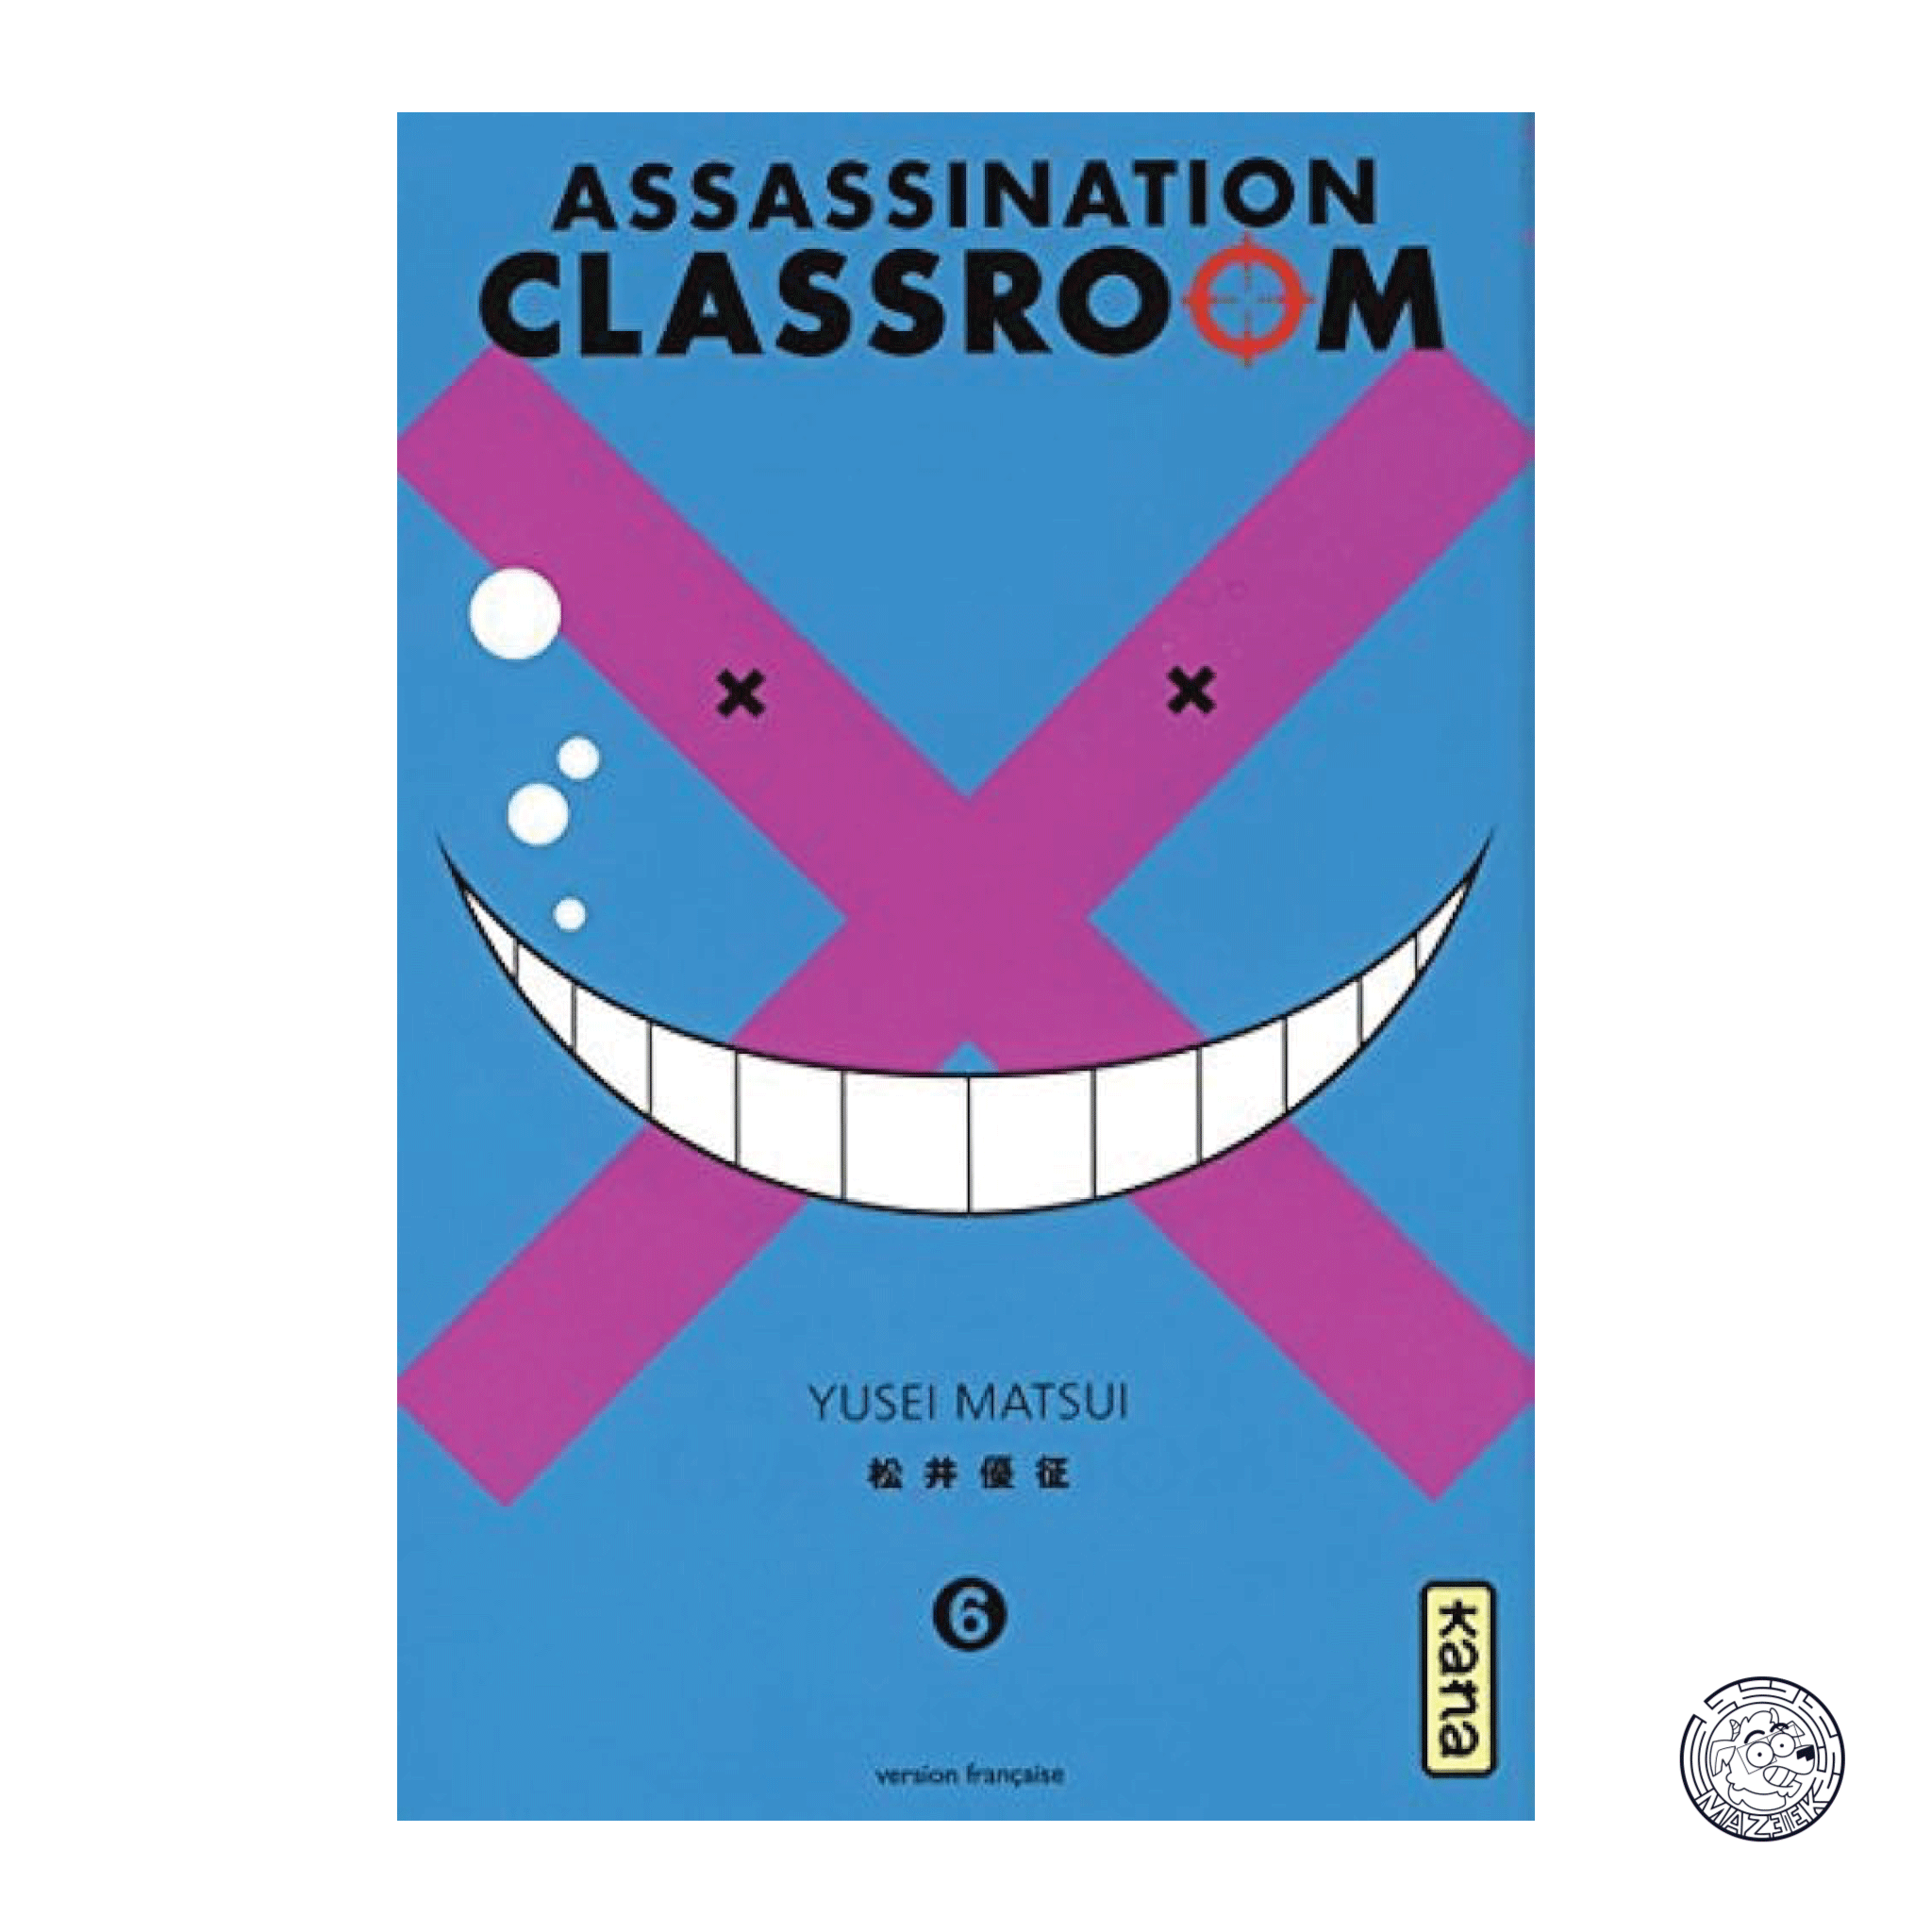 Assassination Classroom 06 - Reprint 2